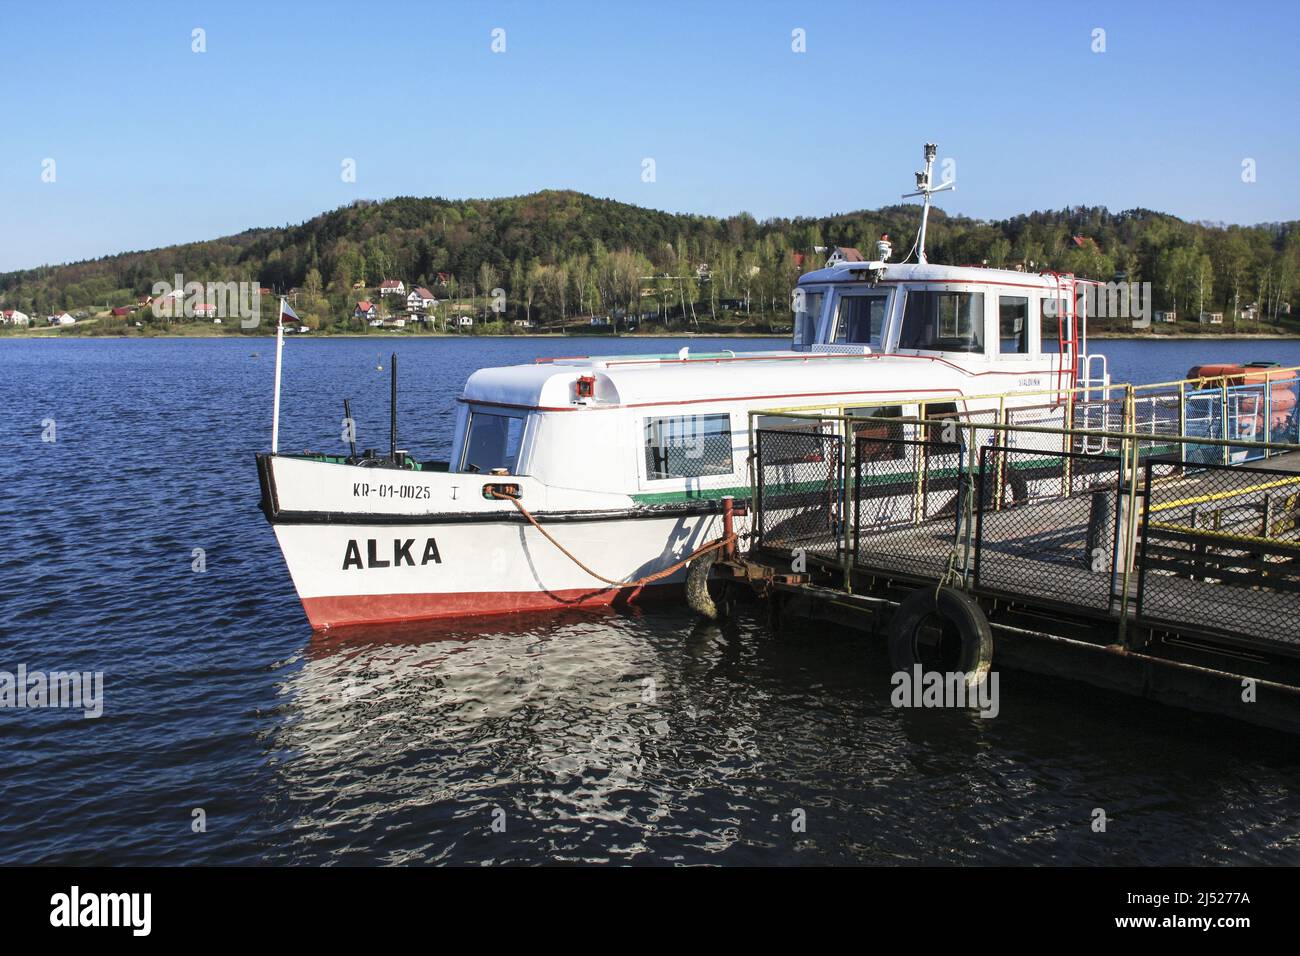 Un barco llamado Alka en el Roznowskie Foto de stock